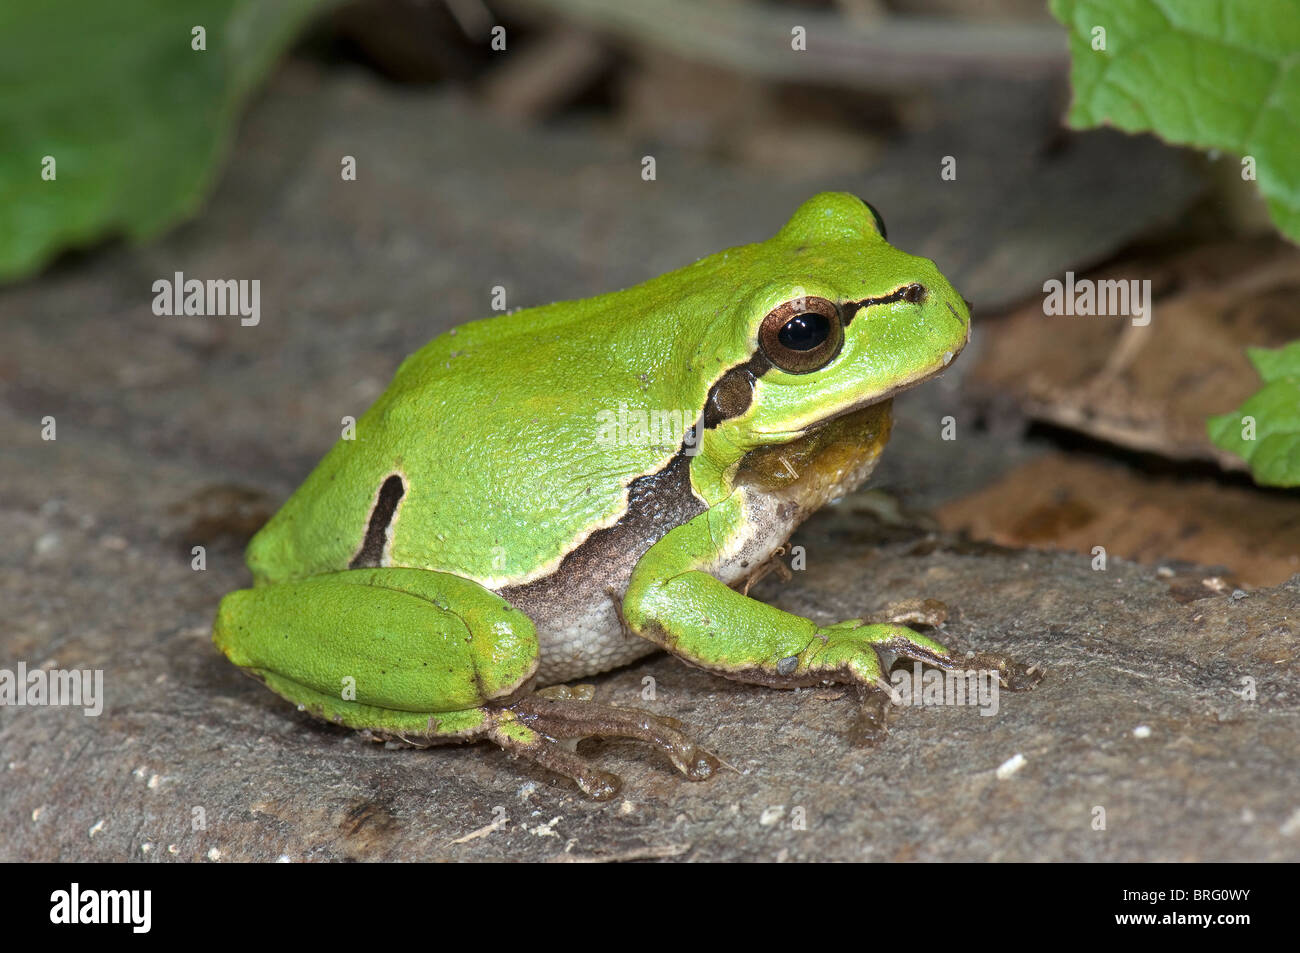 Europäische Treefrog, gemeinsame Treefrog (Hyla Arborea) am Boden. Stockfoto